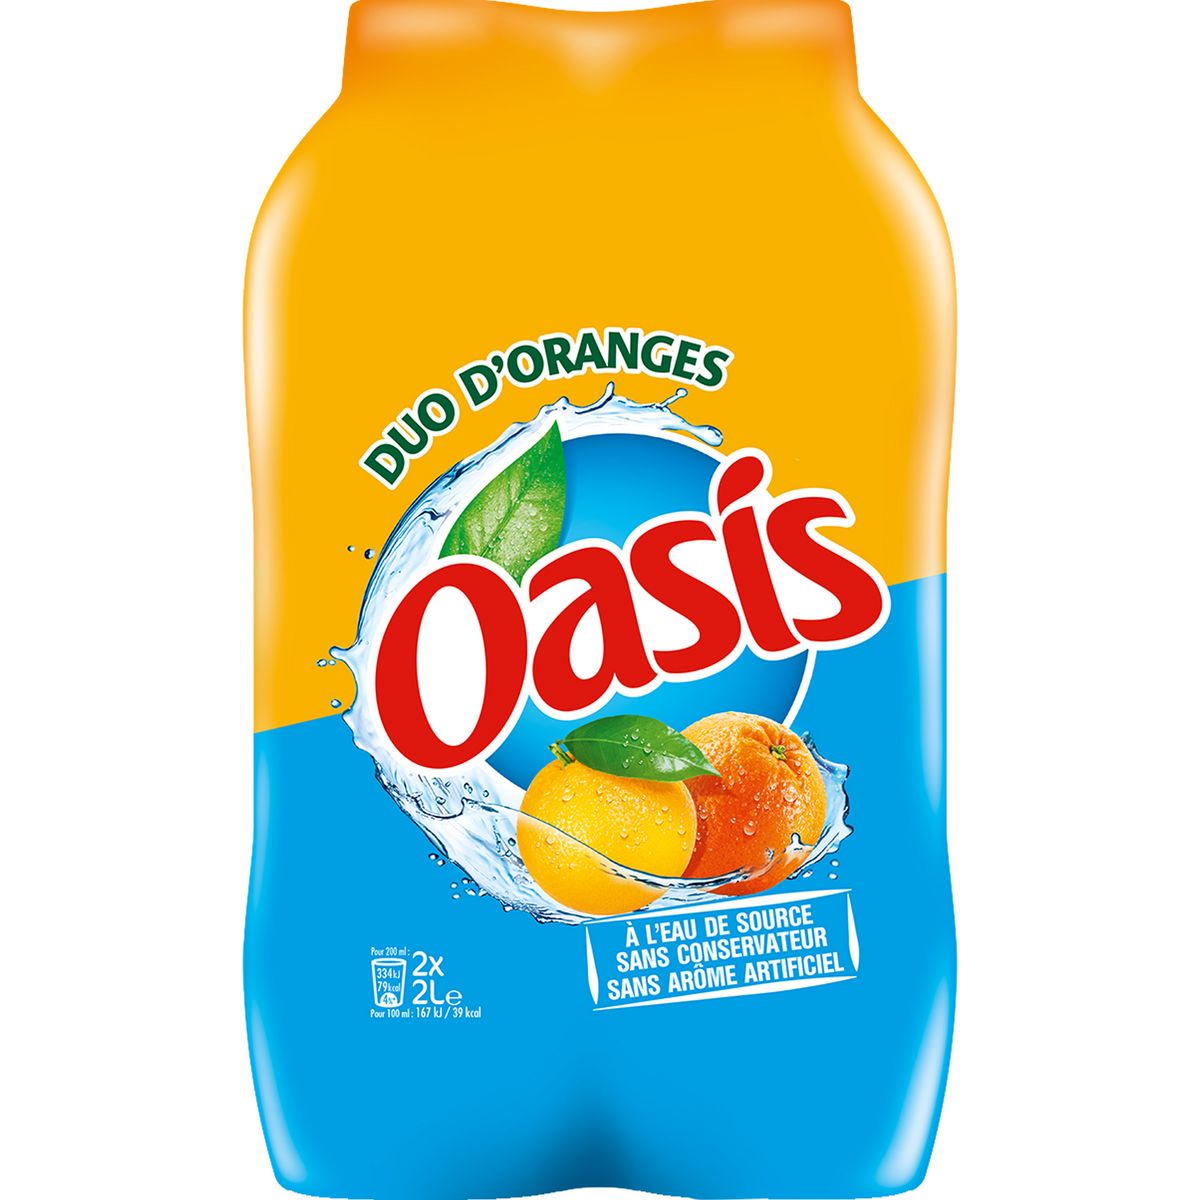 Oasis Boisson Aux Fruits Goût Orange 2x2l Pas Cher Auchanfr